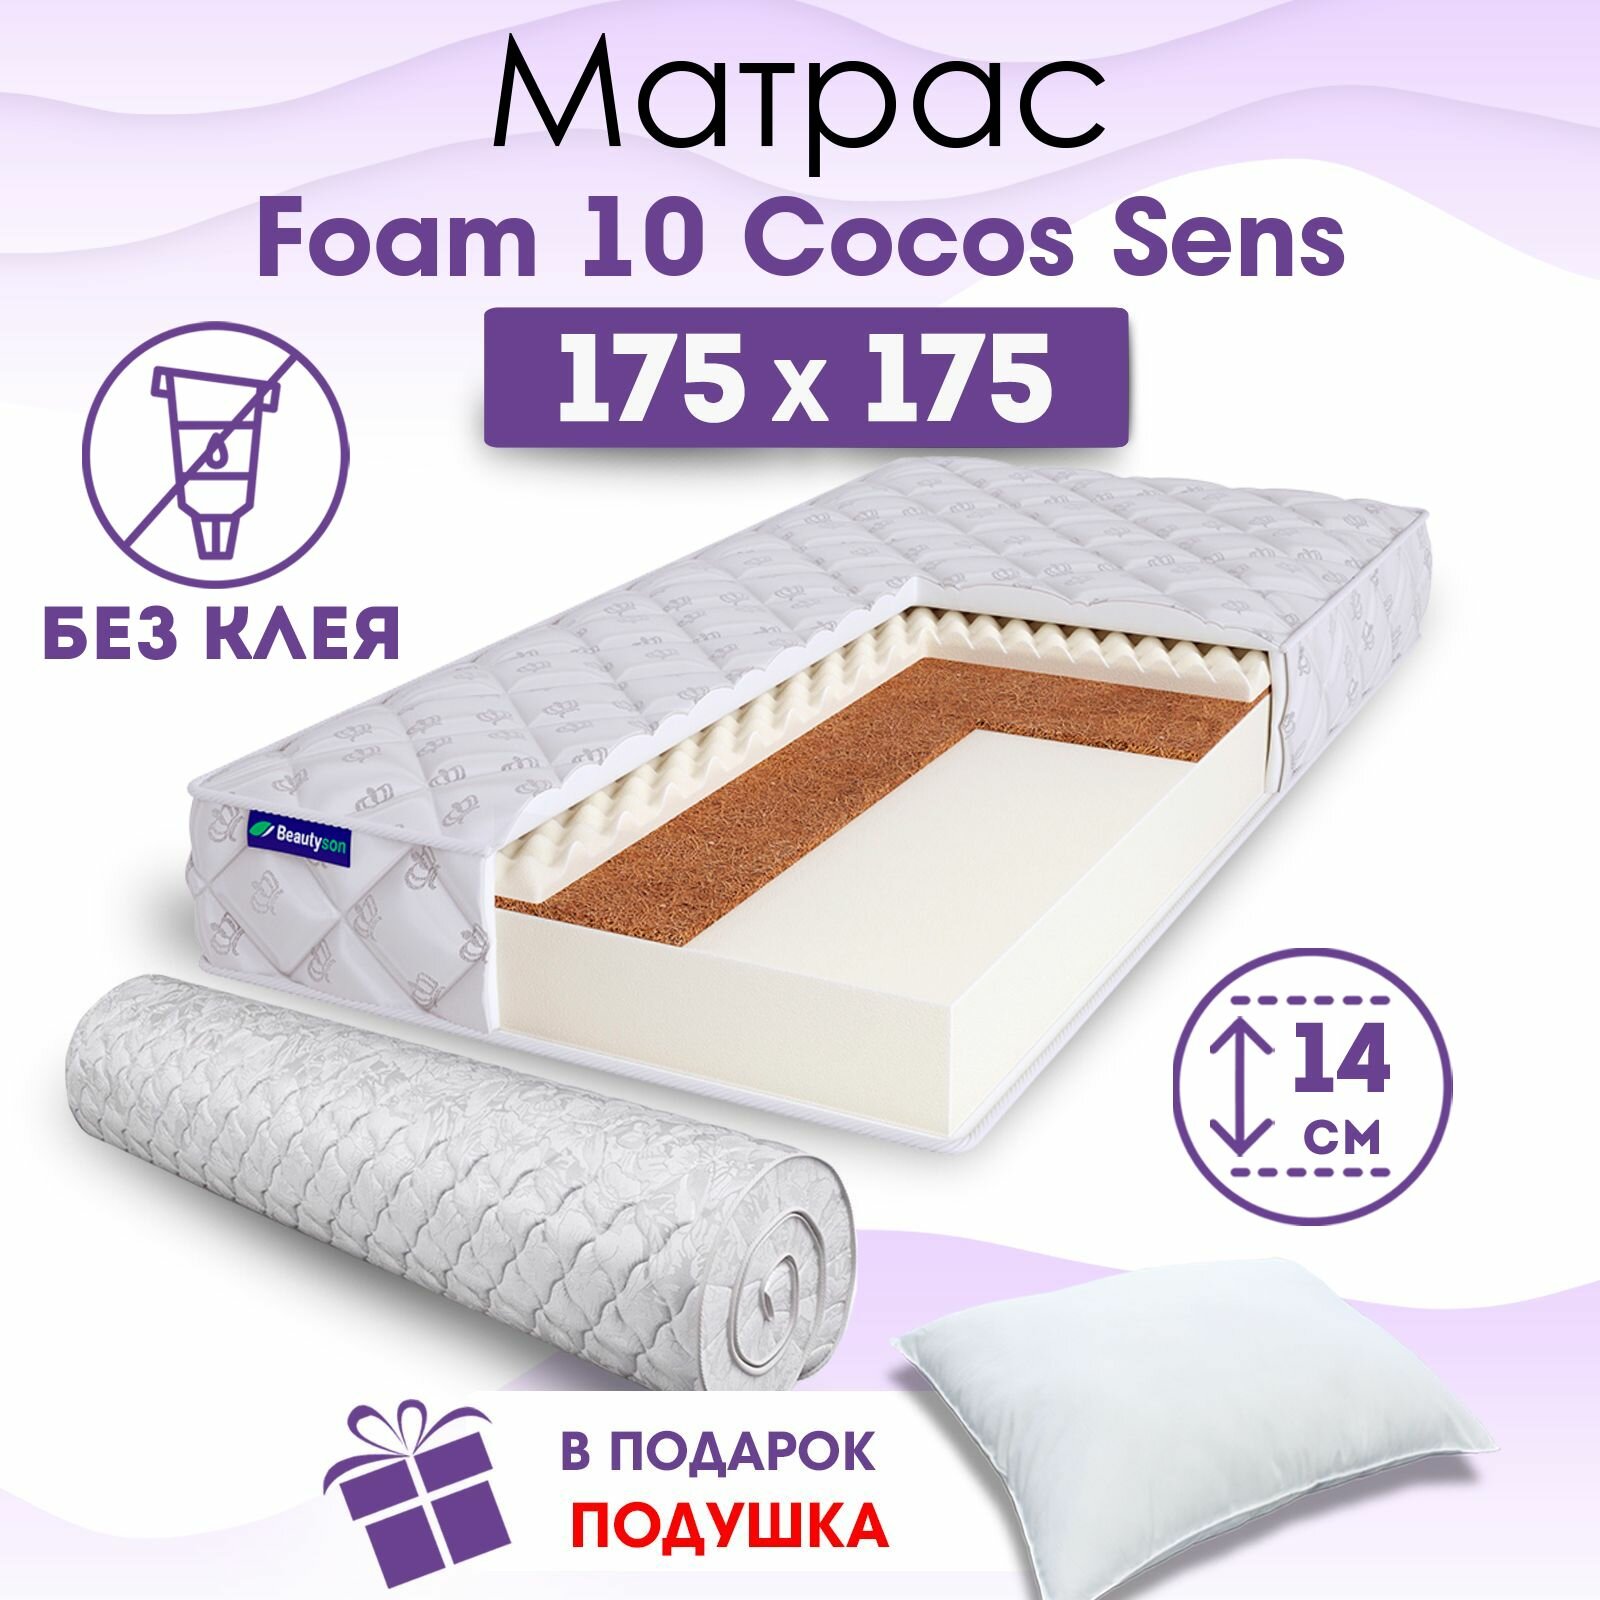 Ортопедический матрас Beautyson Foam 10 Cocos Sens без клея, 175х175, 14 см, беспружинный, двухспальный, на кровать, для дивана, умеренно мягкий